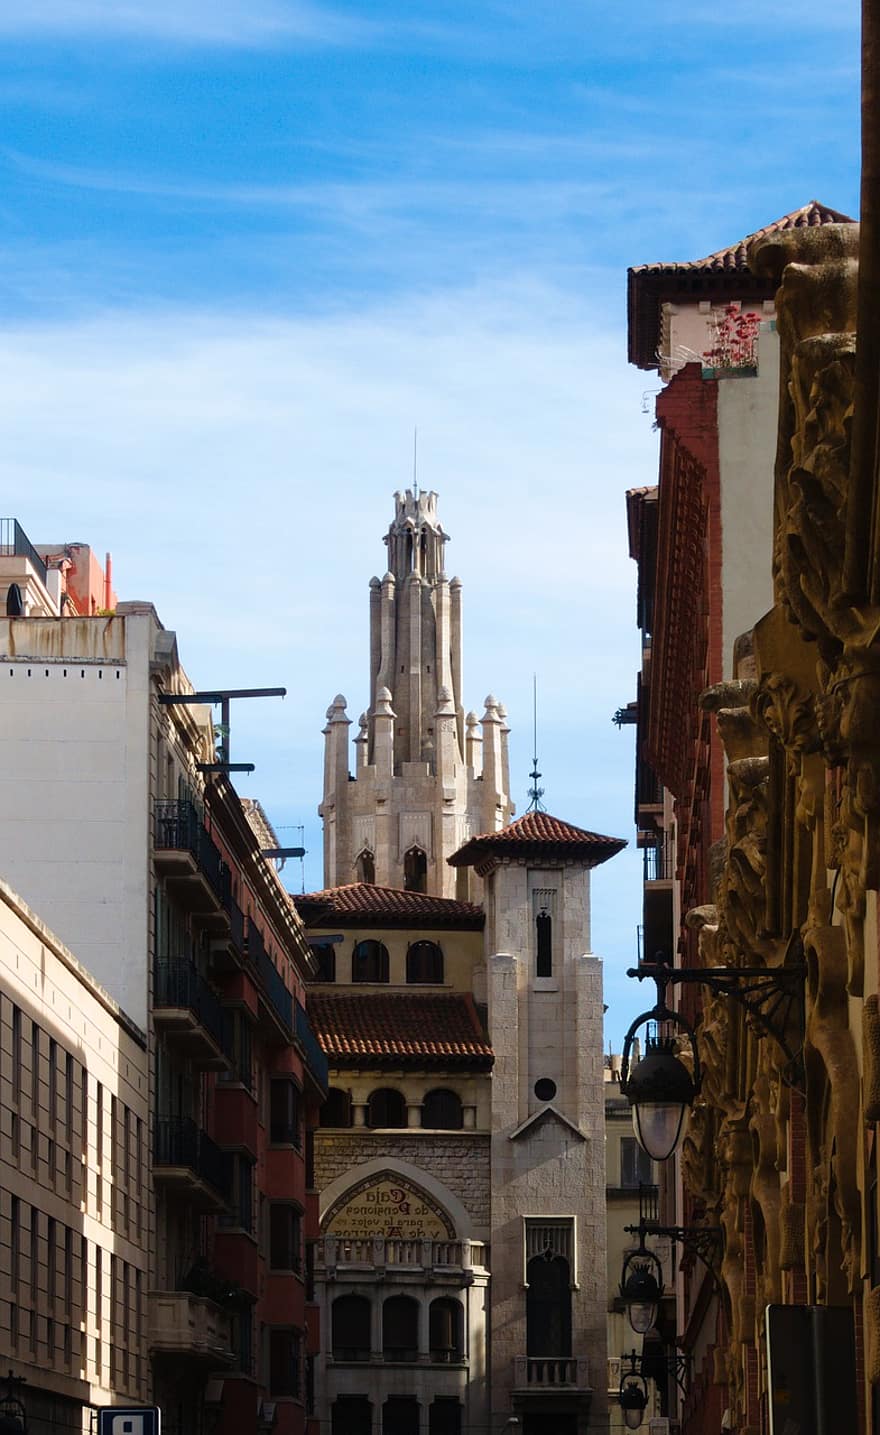 바르셀로나, 장례식, 건물, 시티, 건축물, 은행, 탑, 역사적인, 경계표, 유명한 곳, 건물 외장